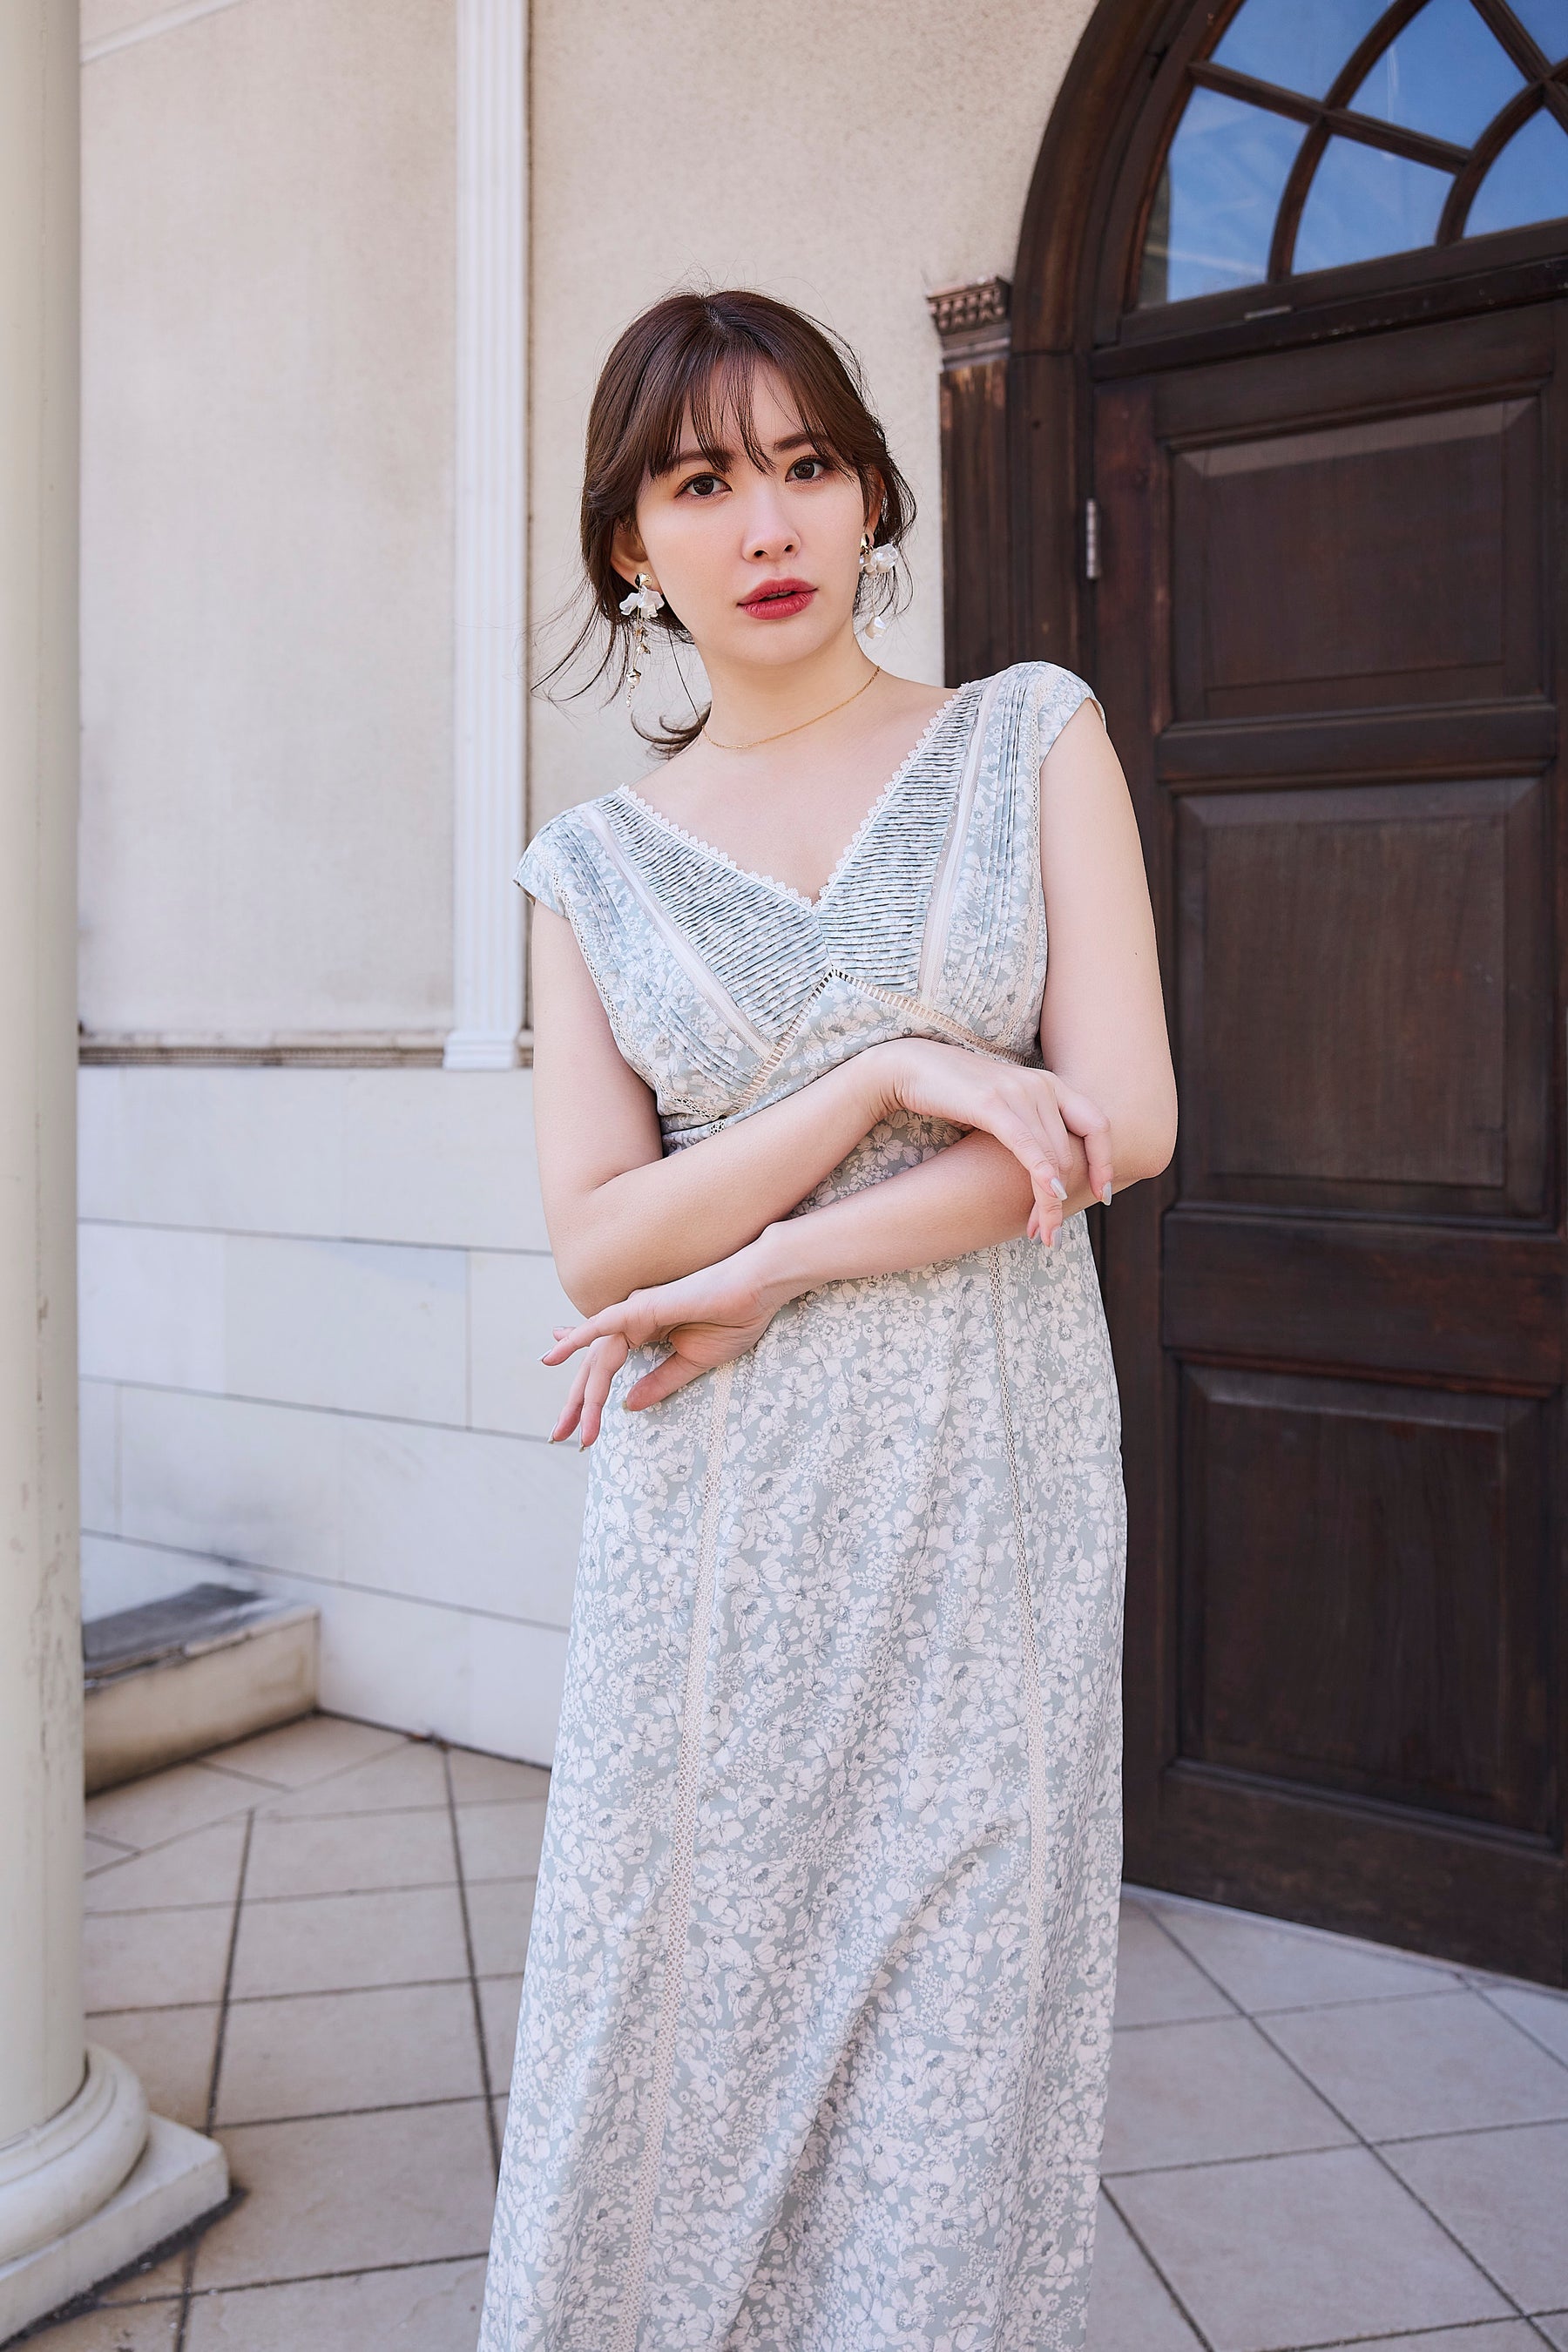 【6月下旬発送】Lace Trimmed Floral Dress